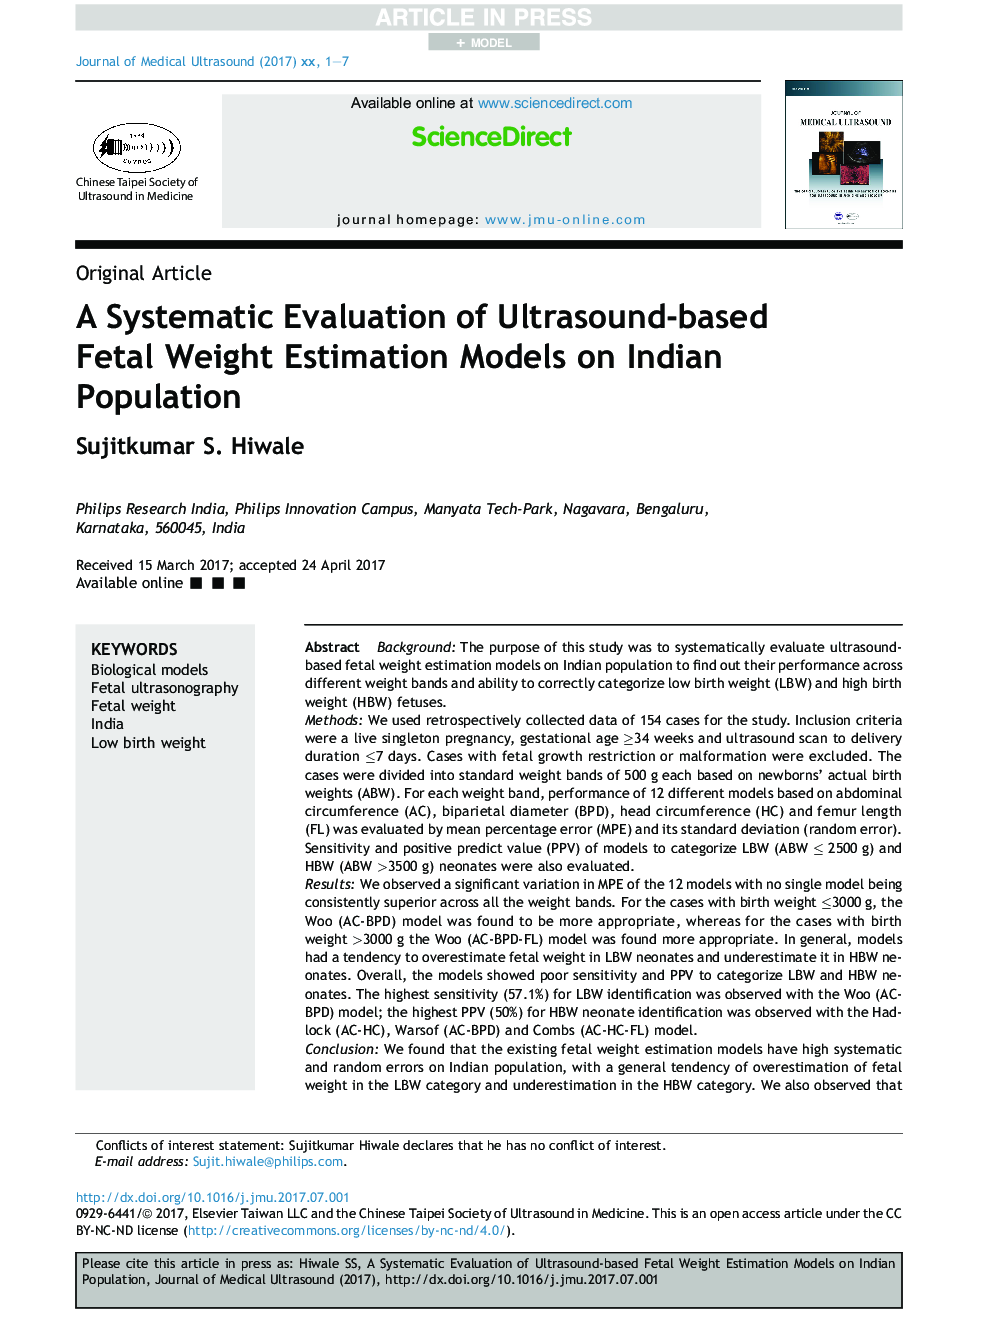 ارزیابی سیستماتیک مدل برآورد وزن جنین مبتنی بر سونوگرافی در جمعیت هند 